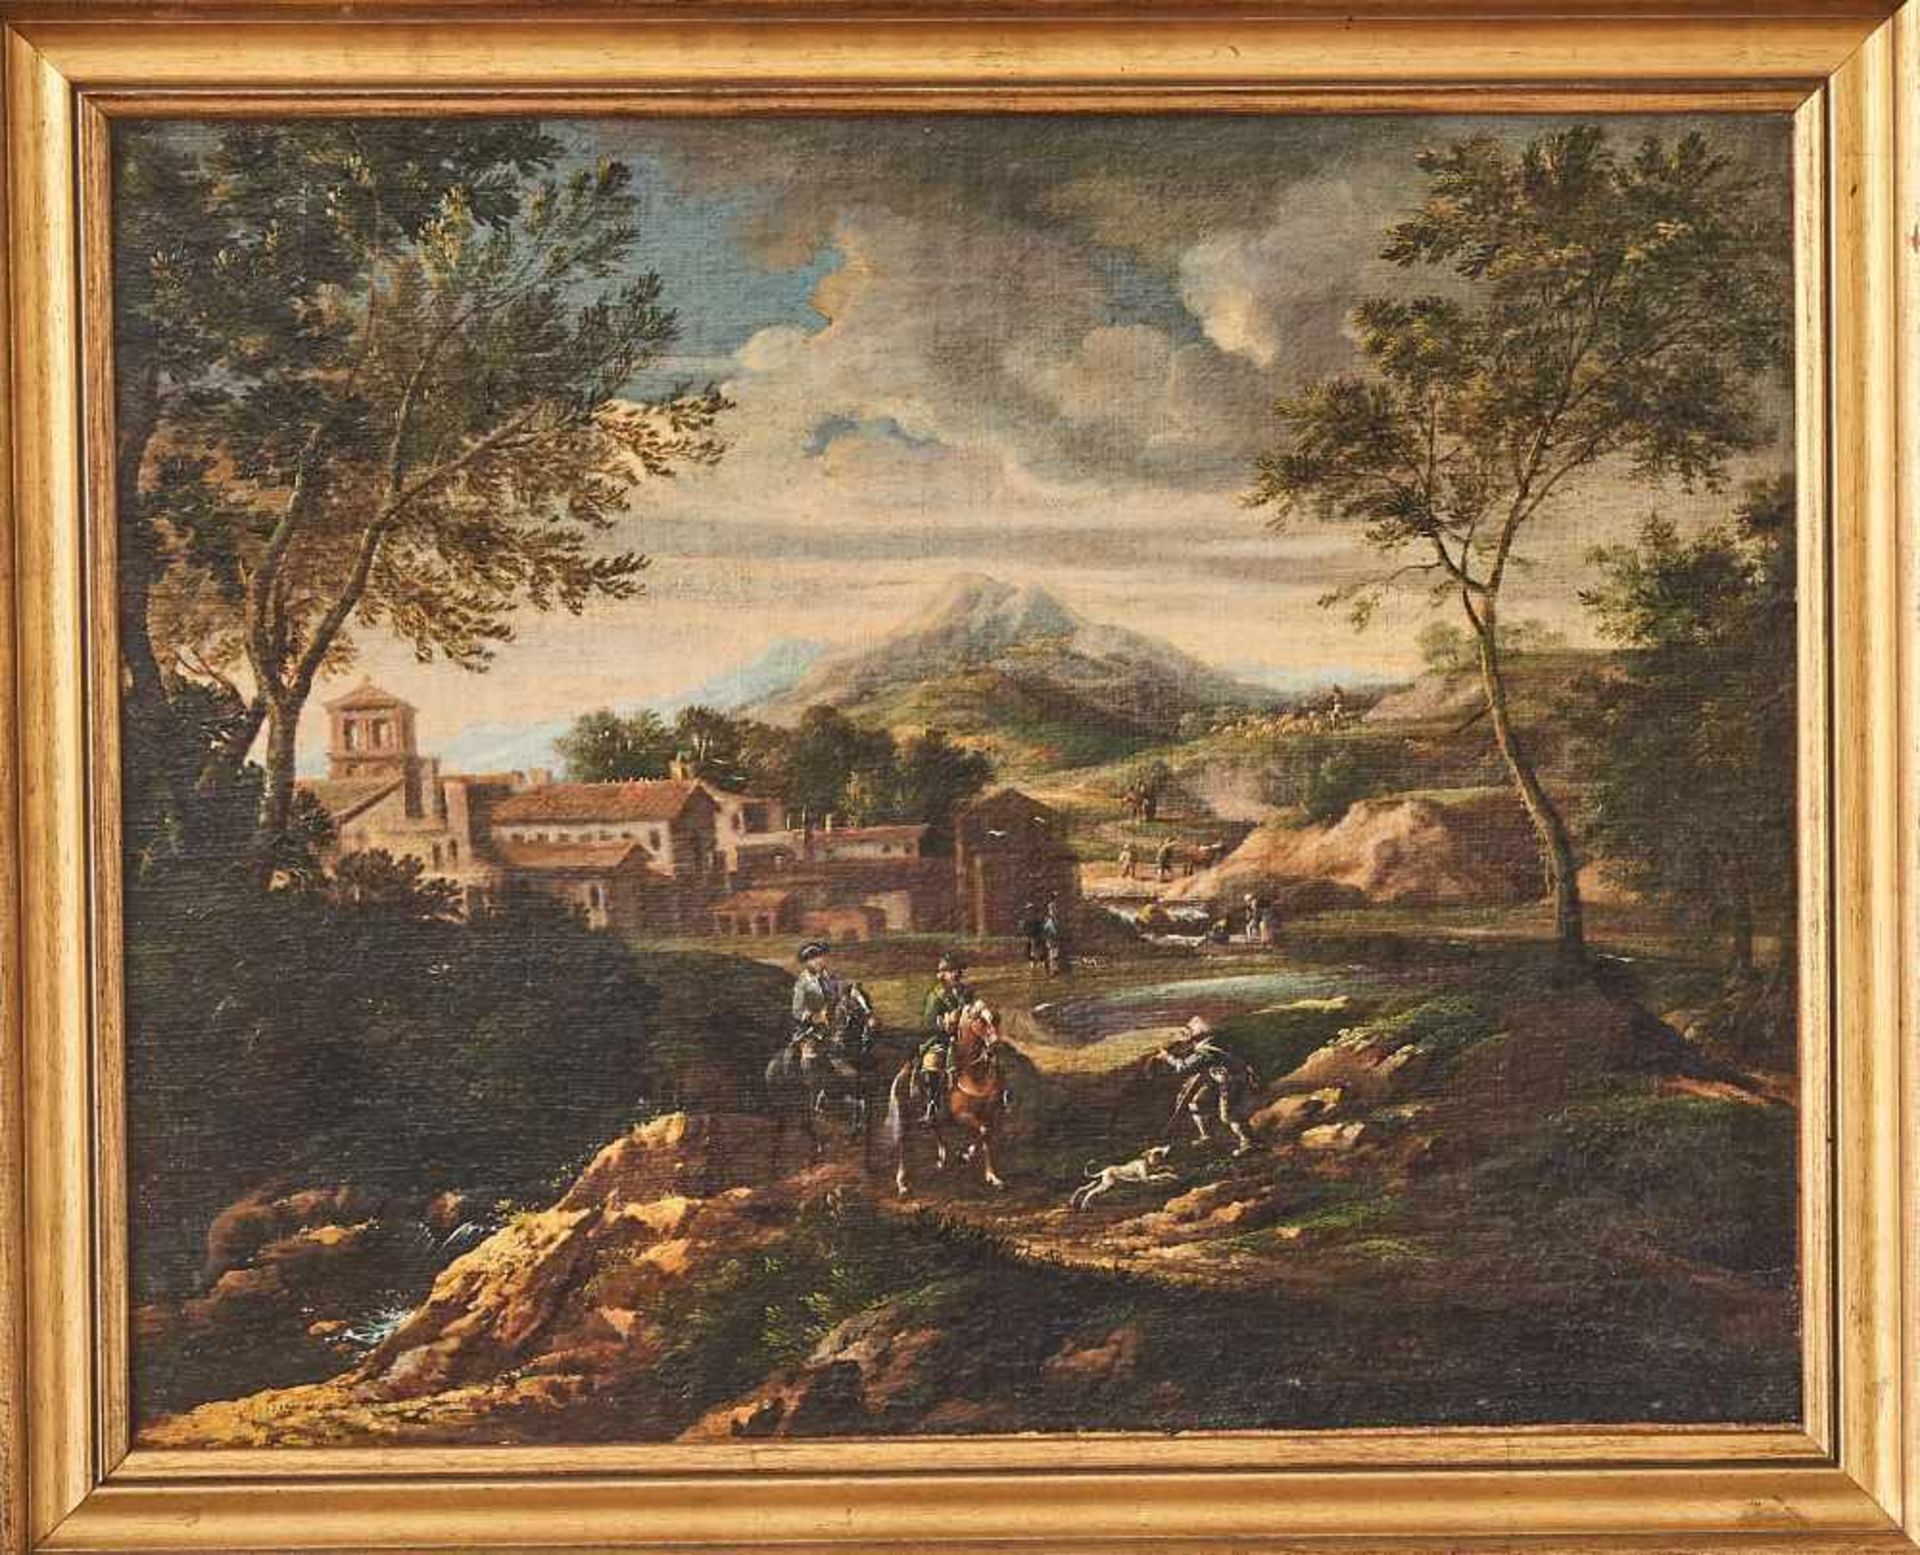 Burglandschaft mit ReiternWillem Gerritsz zugeschr. Van BemmelÖl auf Leinwand, gerahmt. 49 x 61 - Bild 2 aus 2